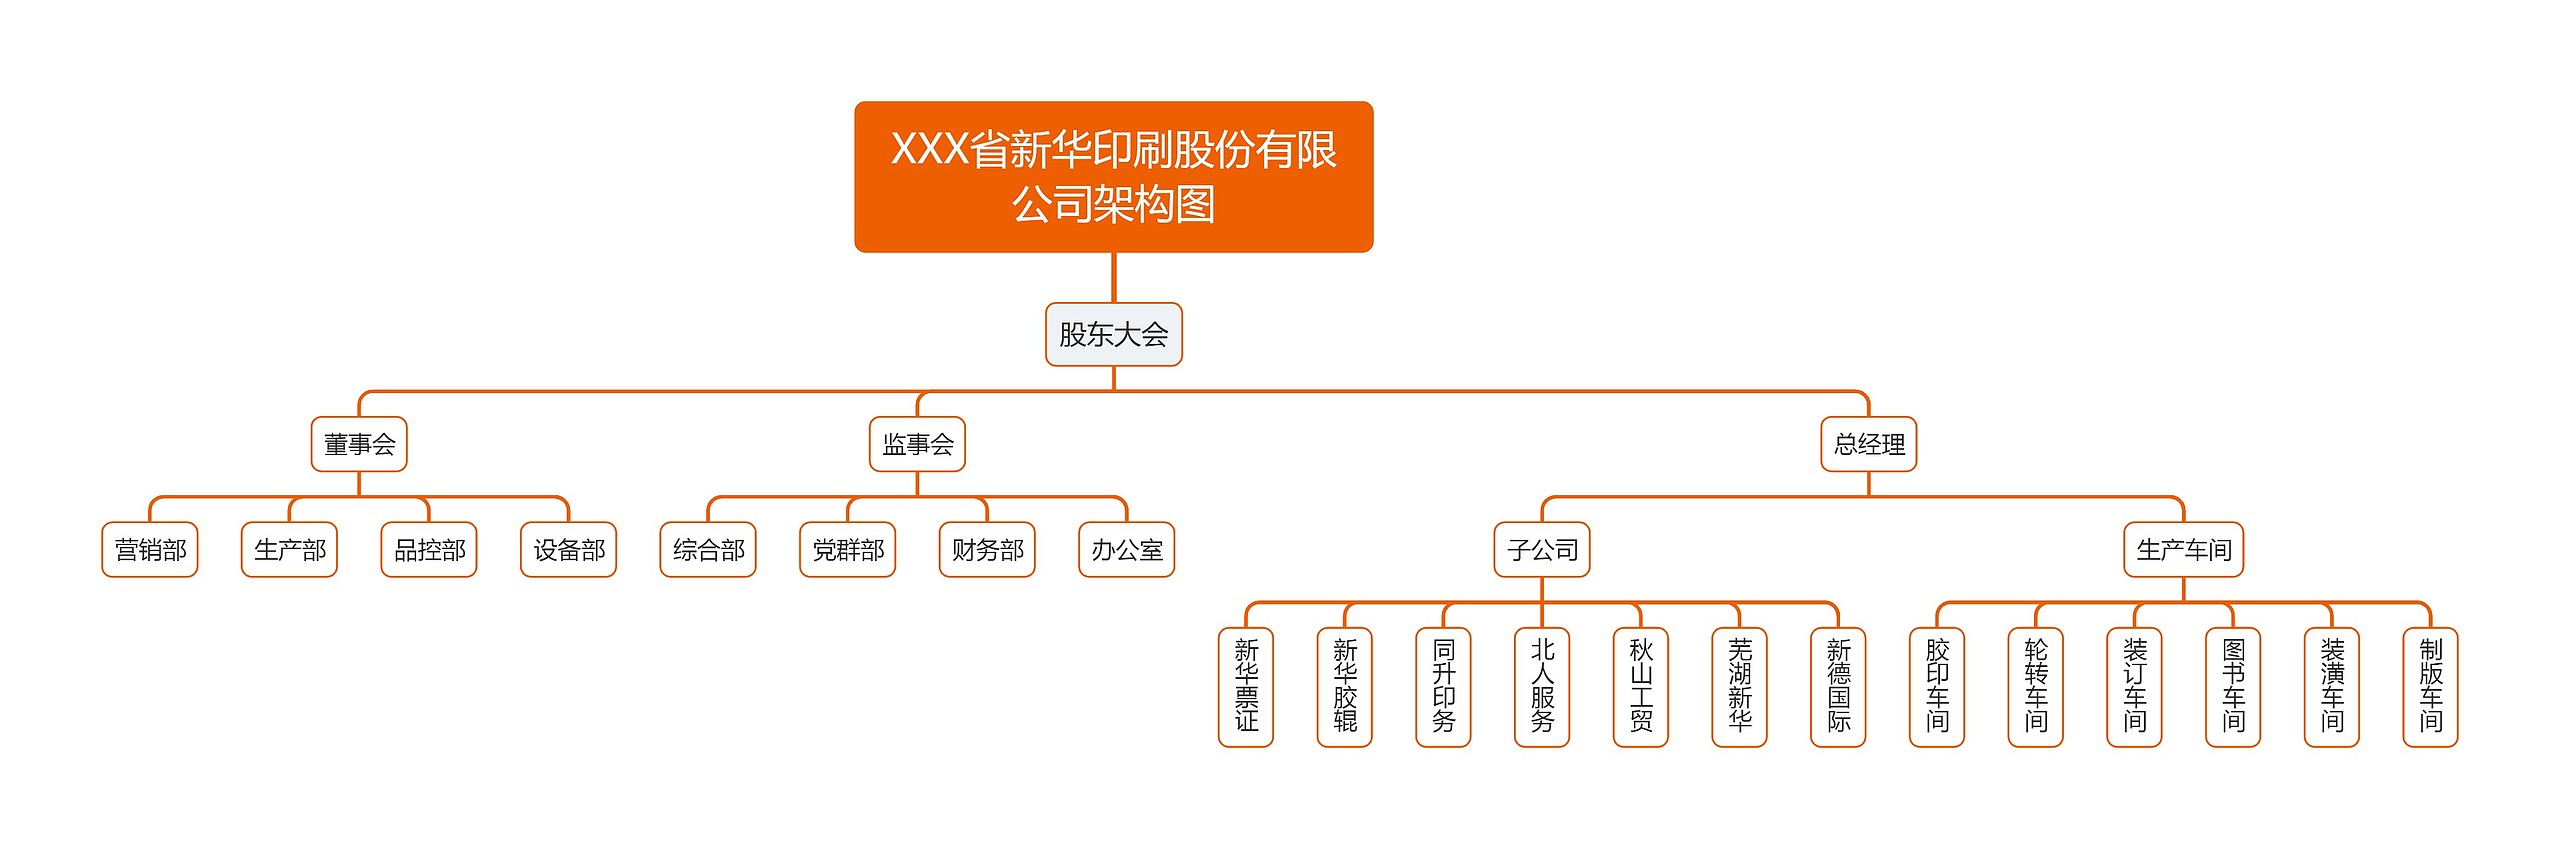 XXX省新华印刷股份有限公司架构图